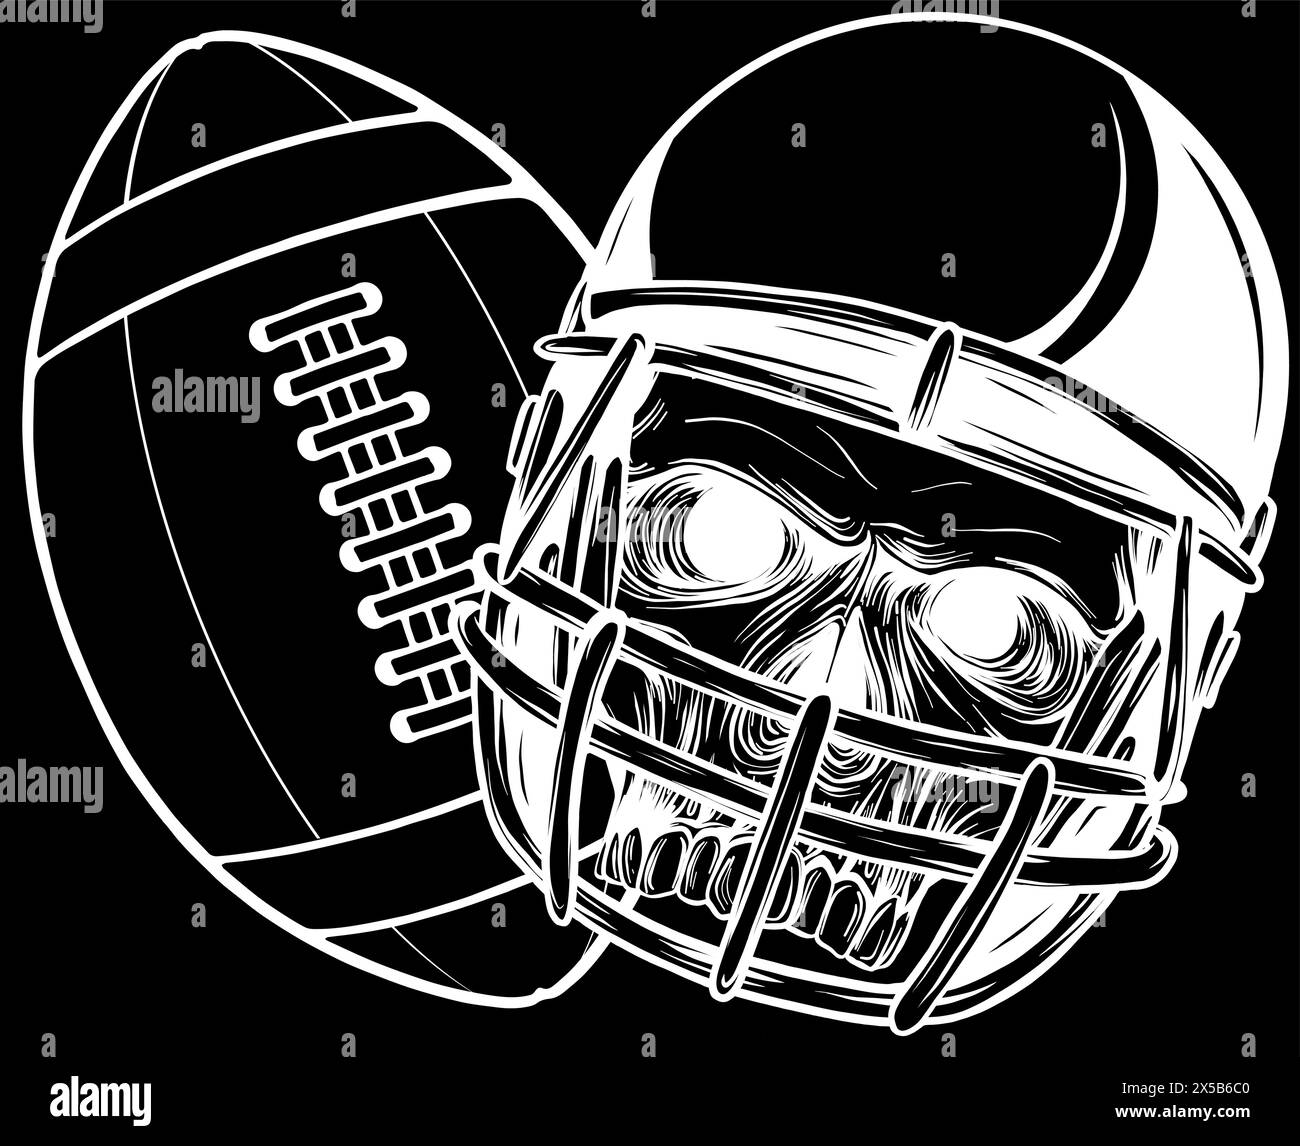 white silhouette of helmet football skull with ball vector design on black background Stock Vector